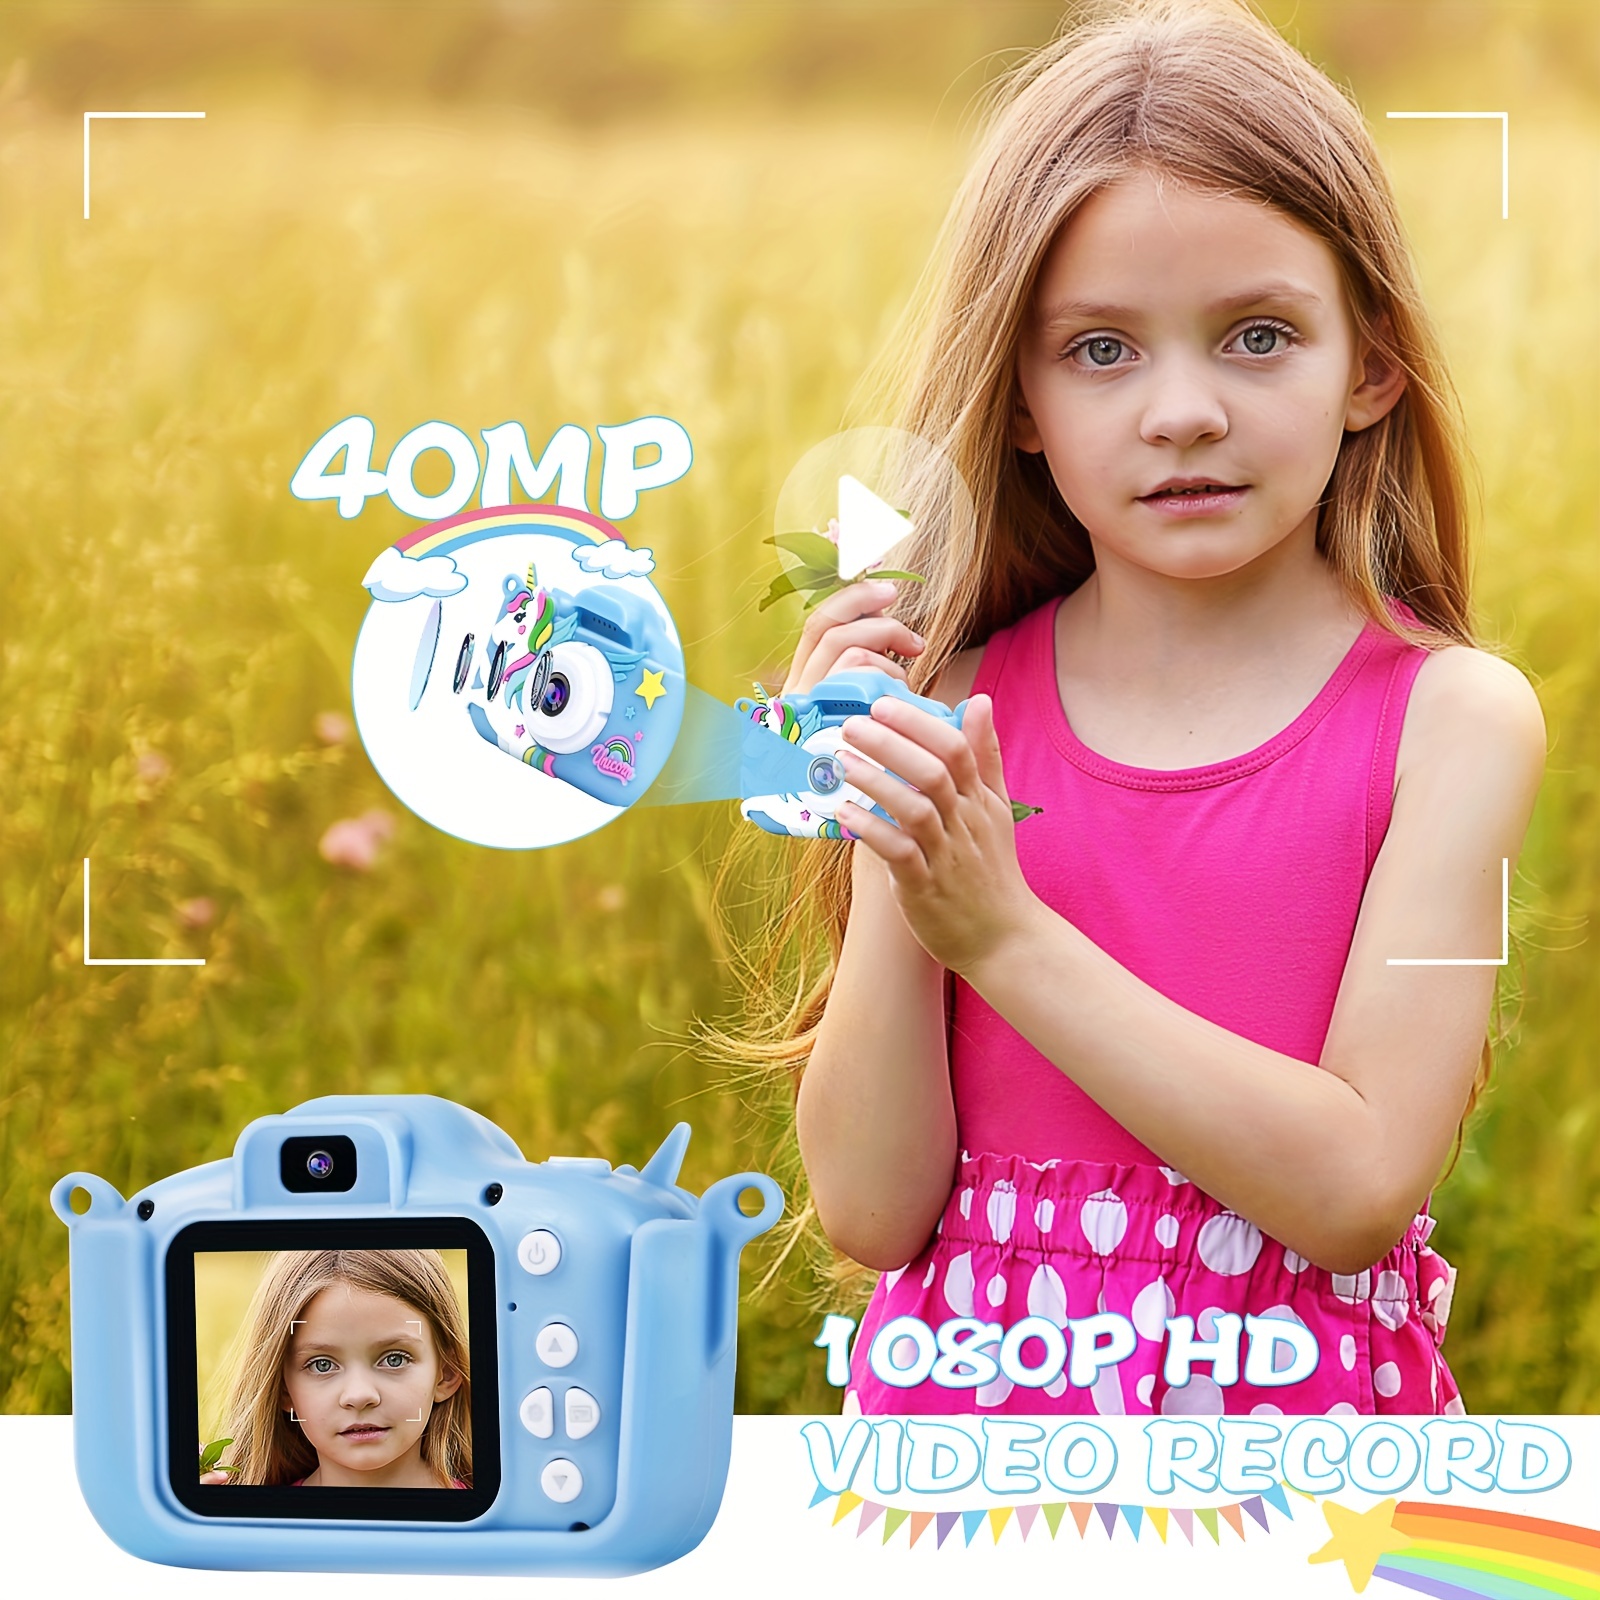 Elixir - Appareil photo antichoc Selfie pour enfants - double caméra pour 3- 10 ans, vidéo HD + carte SD 32 Go. Cadeau d'anniversaire de Noël pour  tout-petits garçons/filles (bleu) - Appareil photo